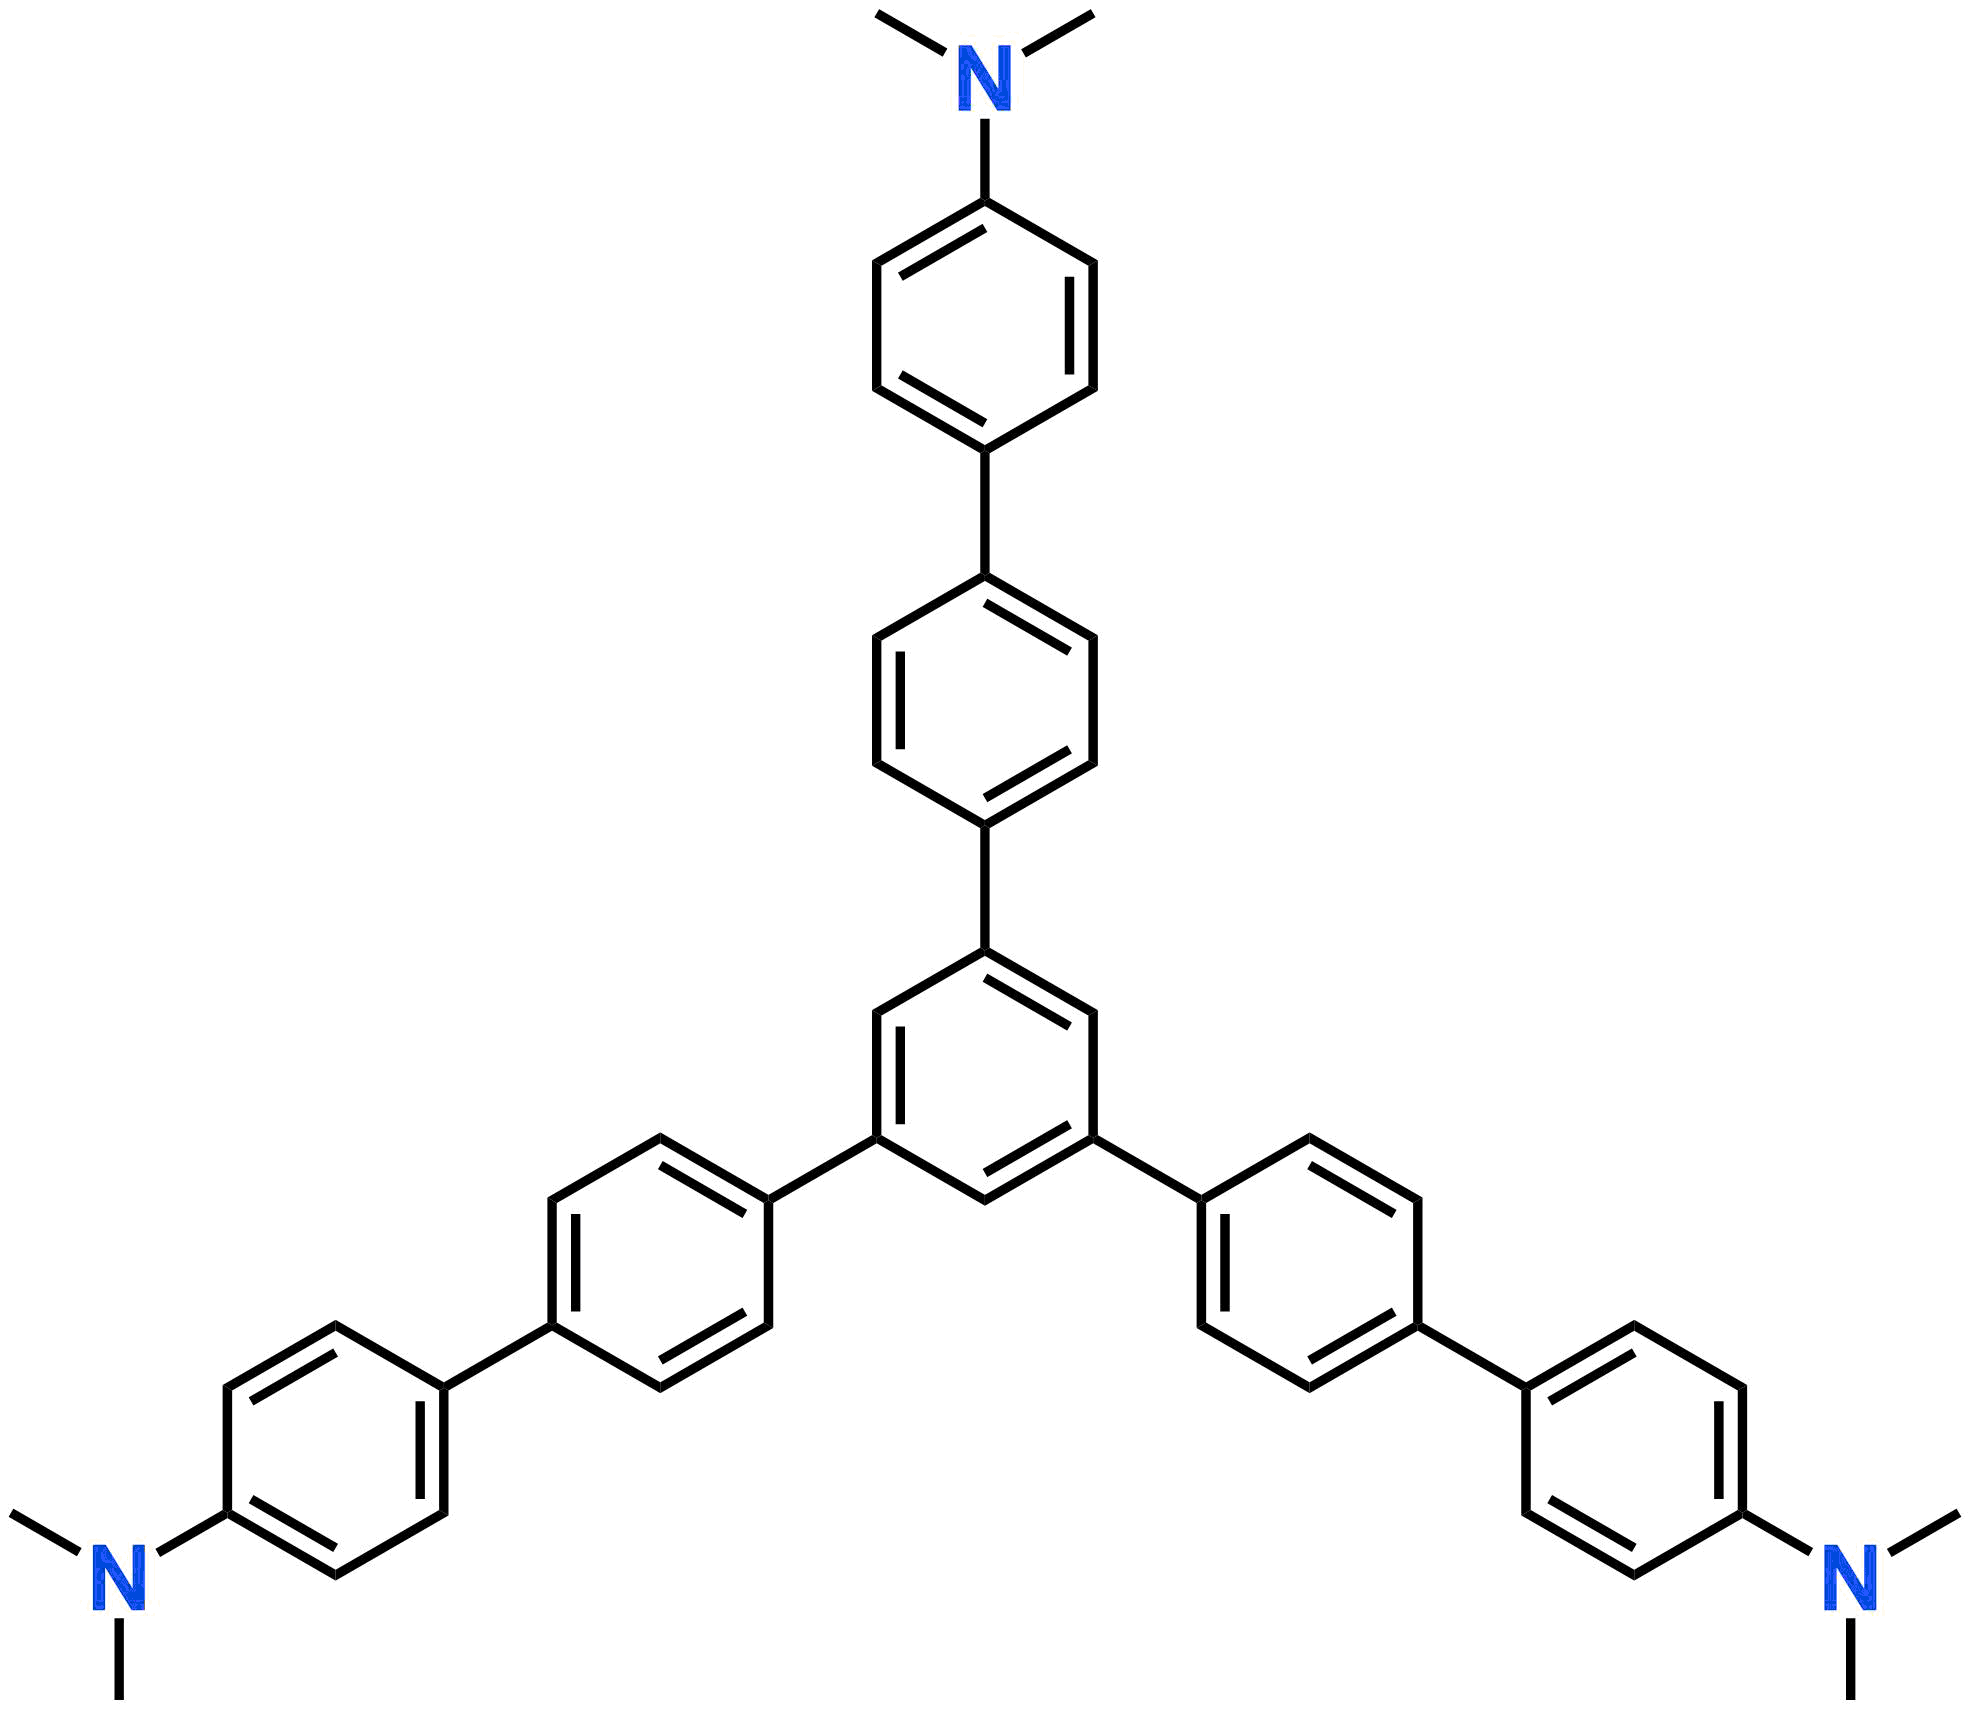 1,3,5-tris[4'-(dimethylamino)biphenyl-4-yl]benzene